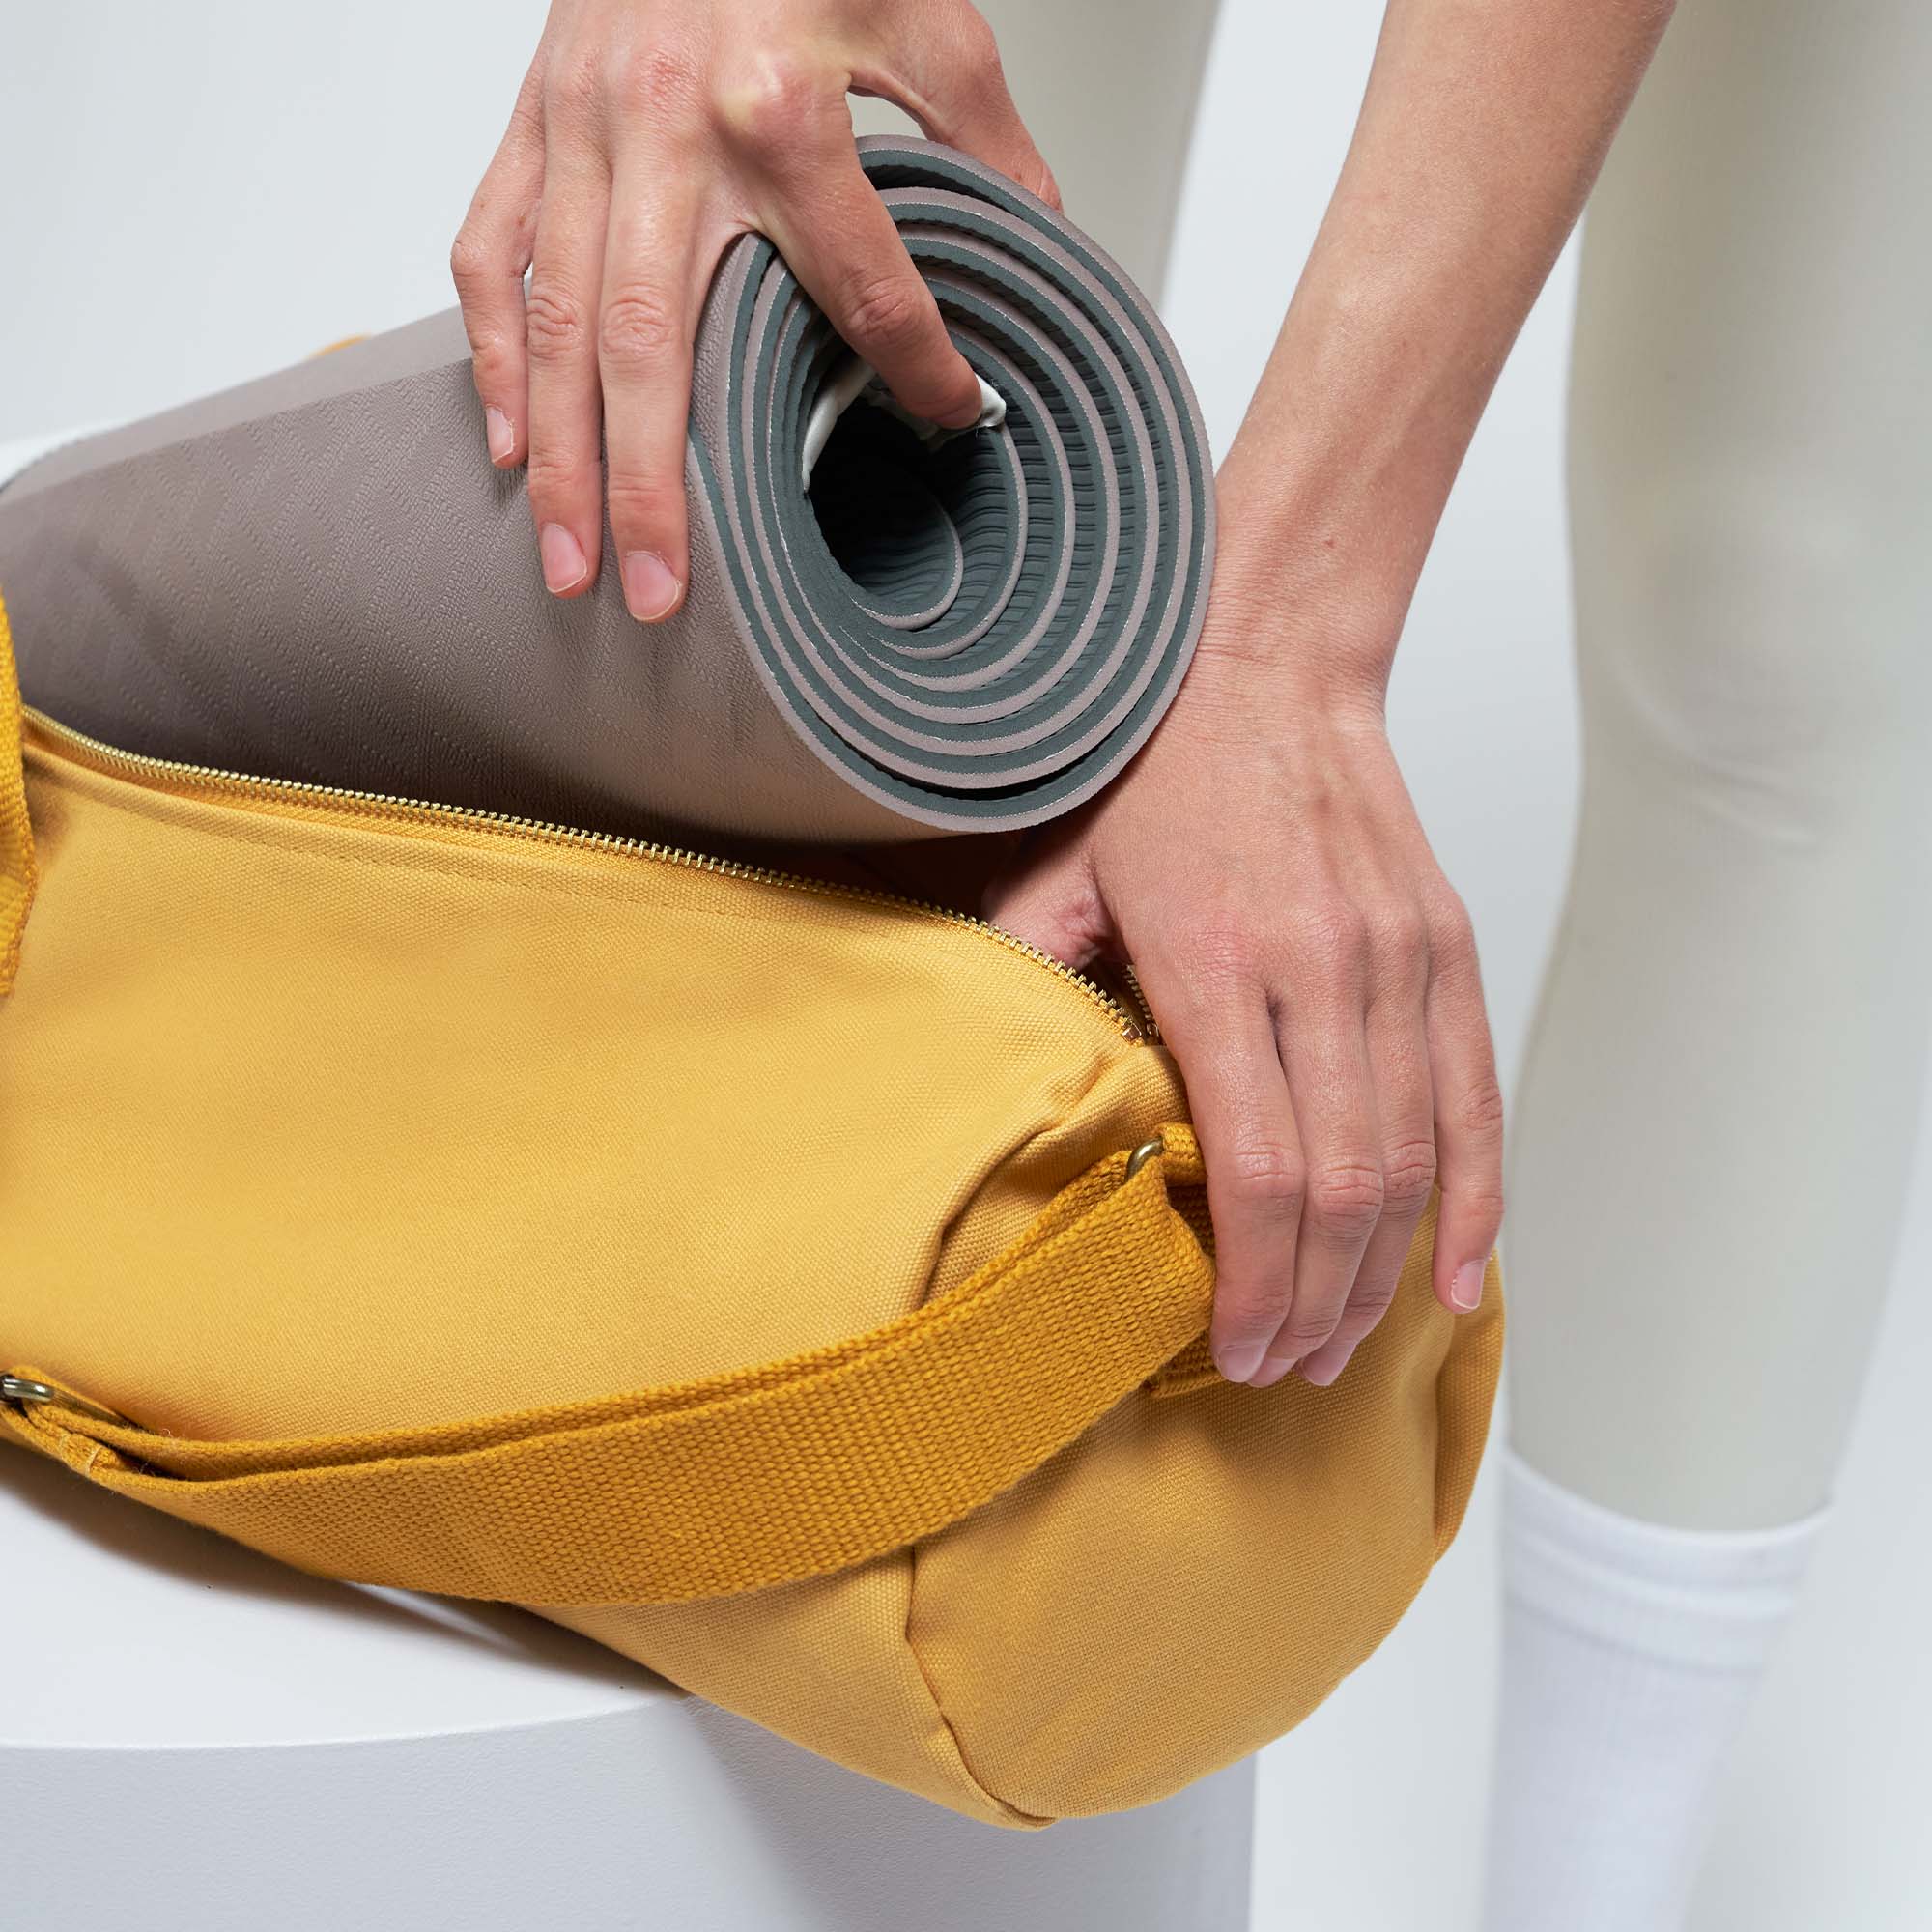 Boence Sac pour tapis de yoga, en toile imprimée – Taille 68,6 x